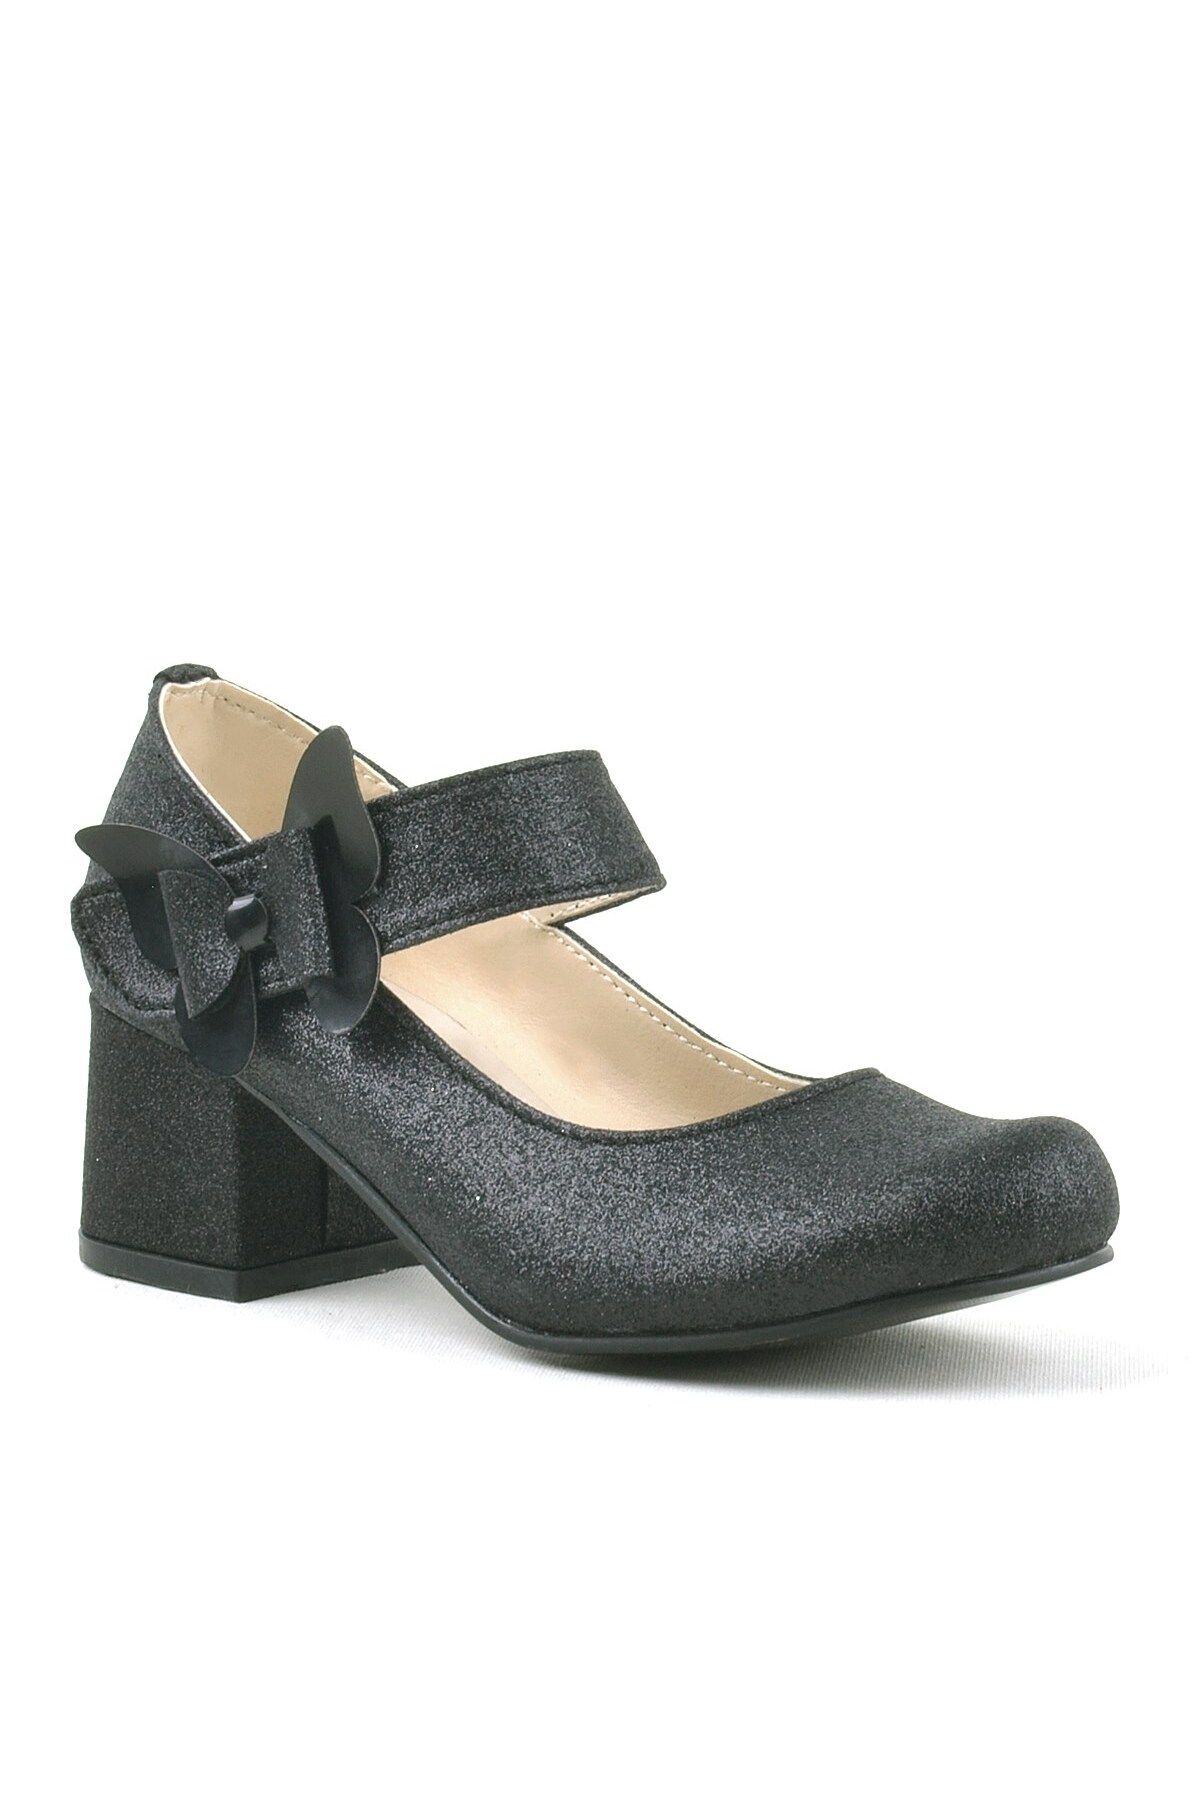 hapshoe Winx Siyah Işıltılı Kelebekli Kız Çocuk Topuklu Ayakkabı